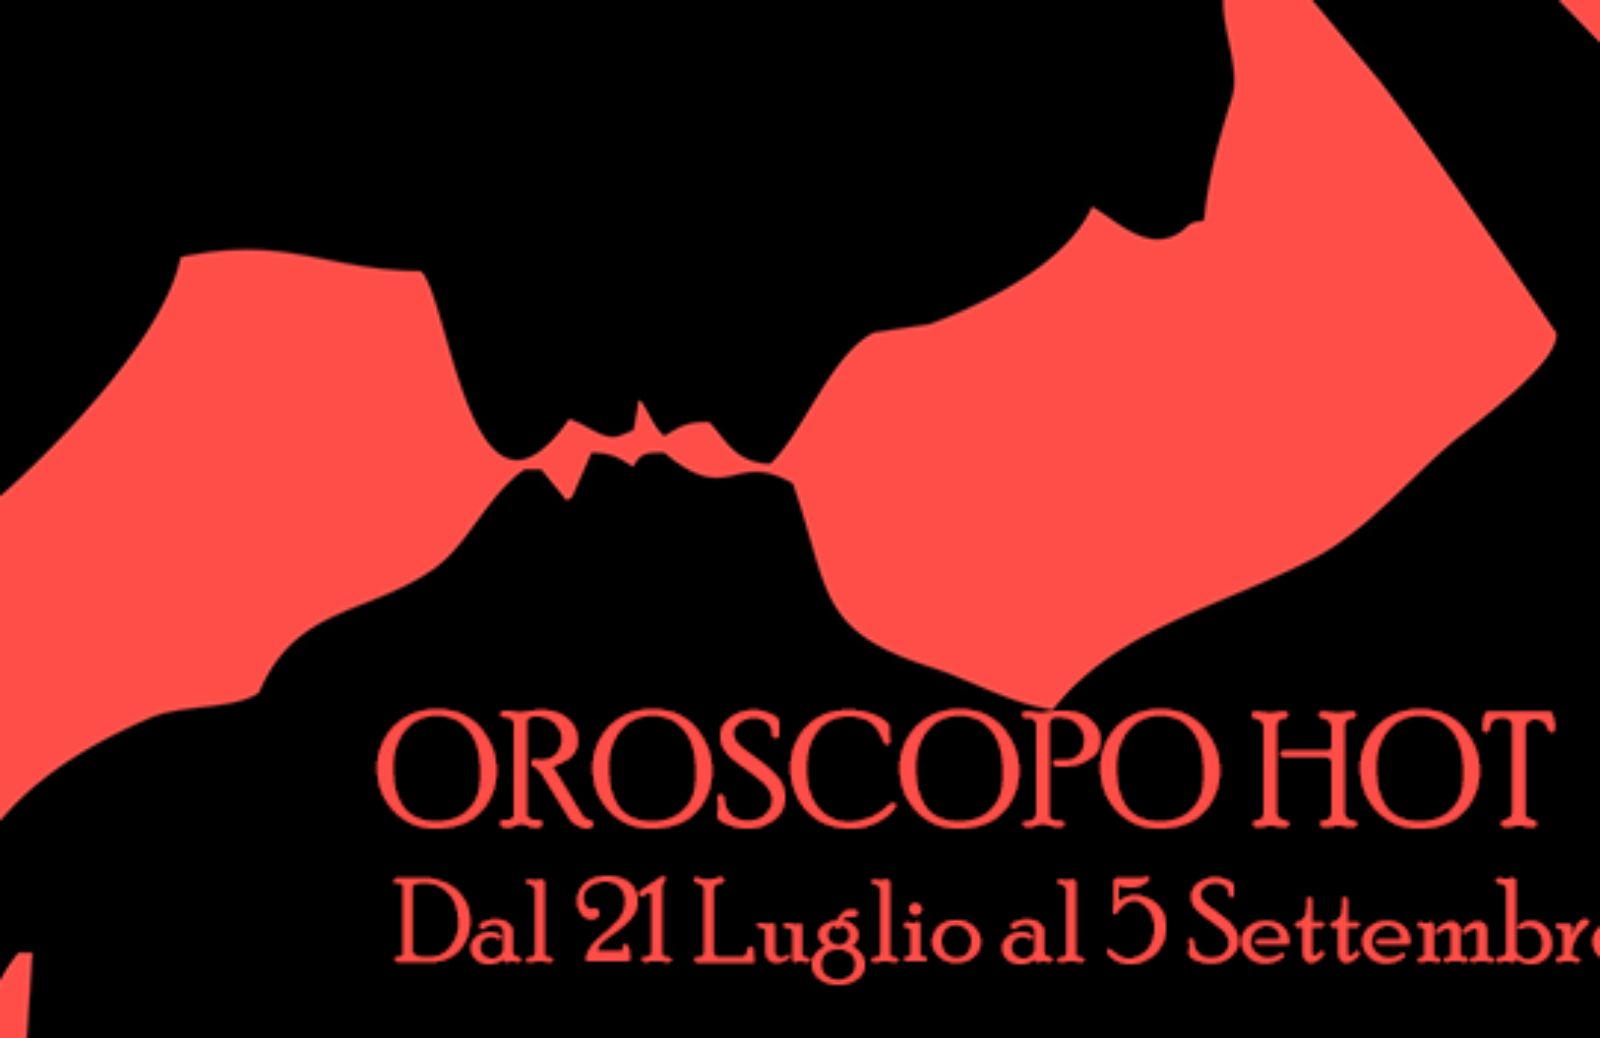 Oroscopo Hot: dal 21 luglio al 5 settembre